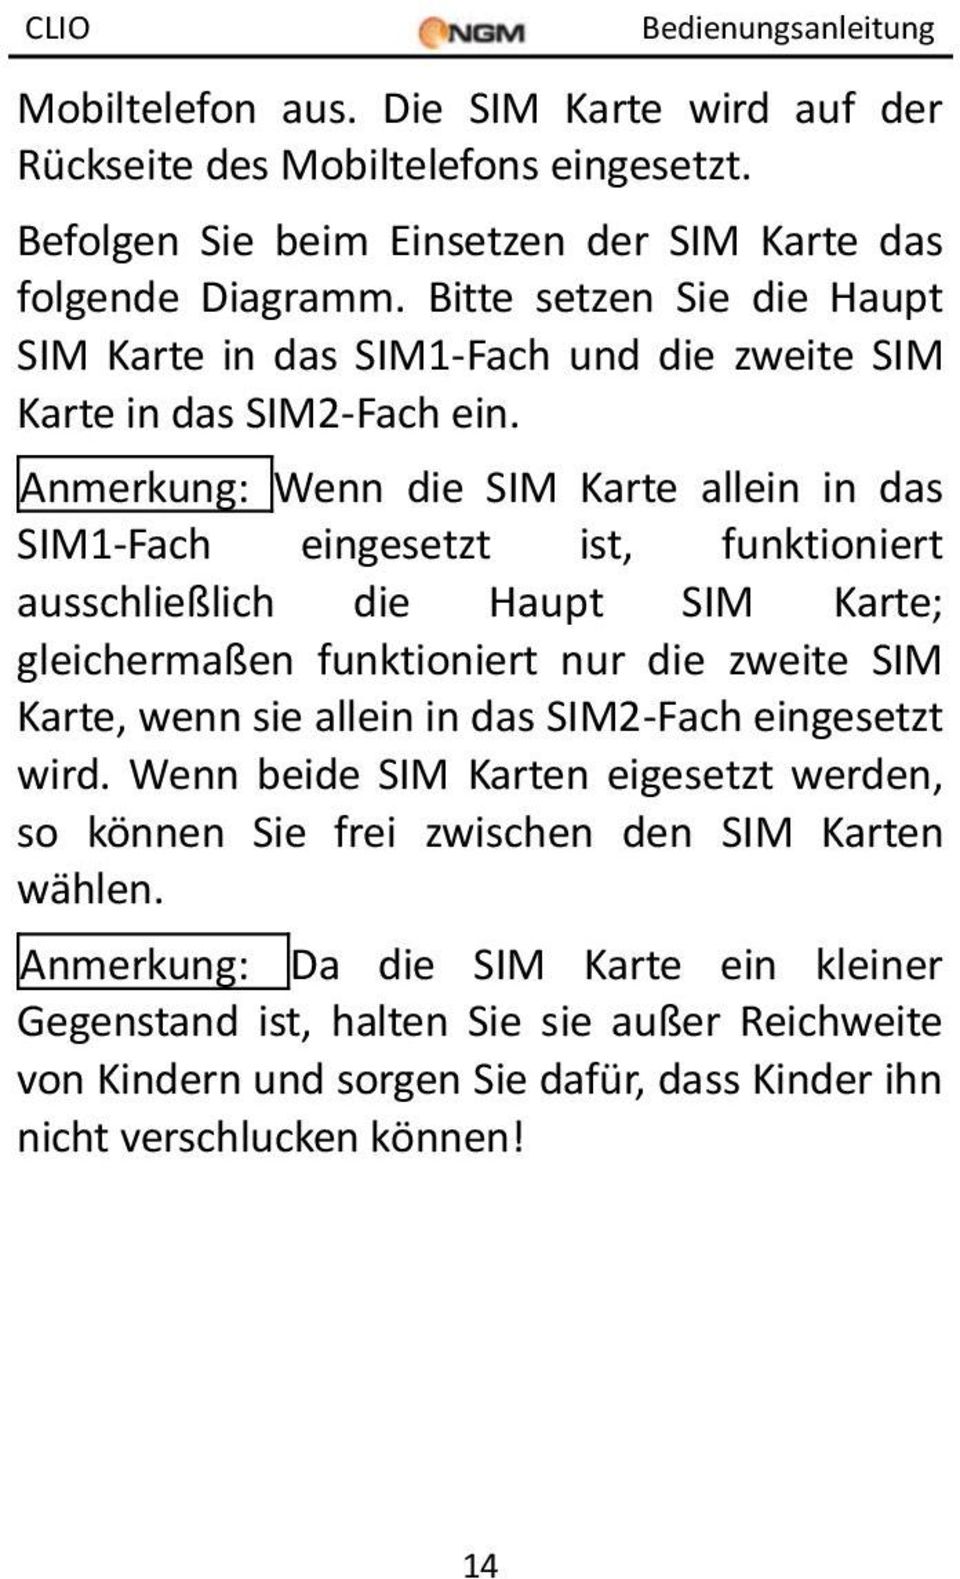 Anmerkung: Wenn die SIM Karte allein in das SIM1-Fach eingesetzt ist, funktioniert ausschließlich die Haupt SIM Karte; gleichermaßen funktioniert nur die zweite SIM Karte, wenn sie